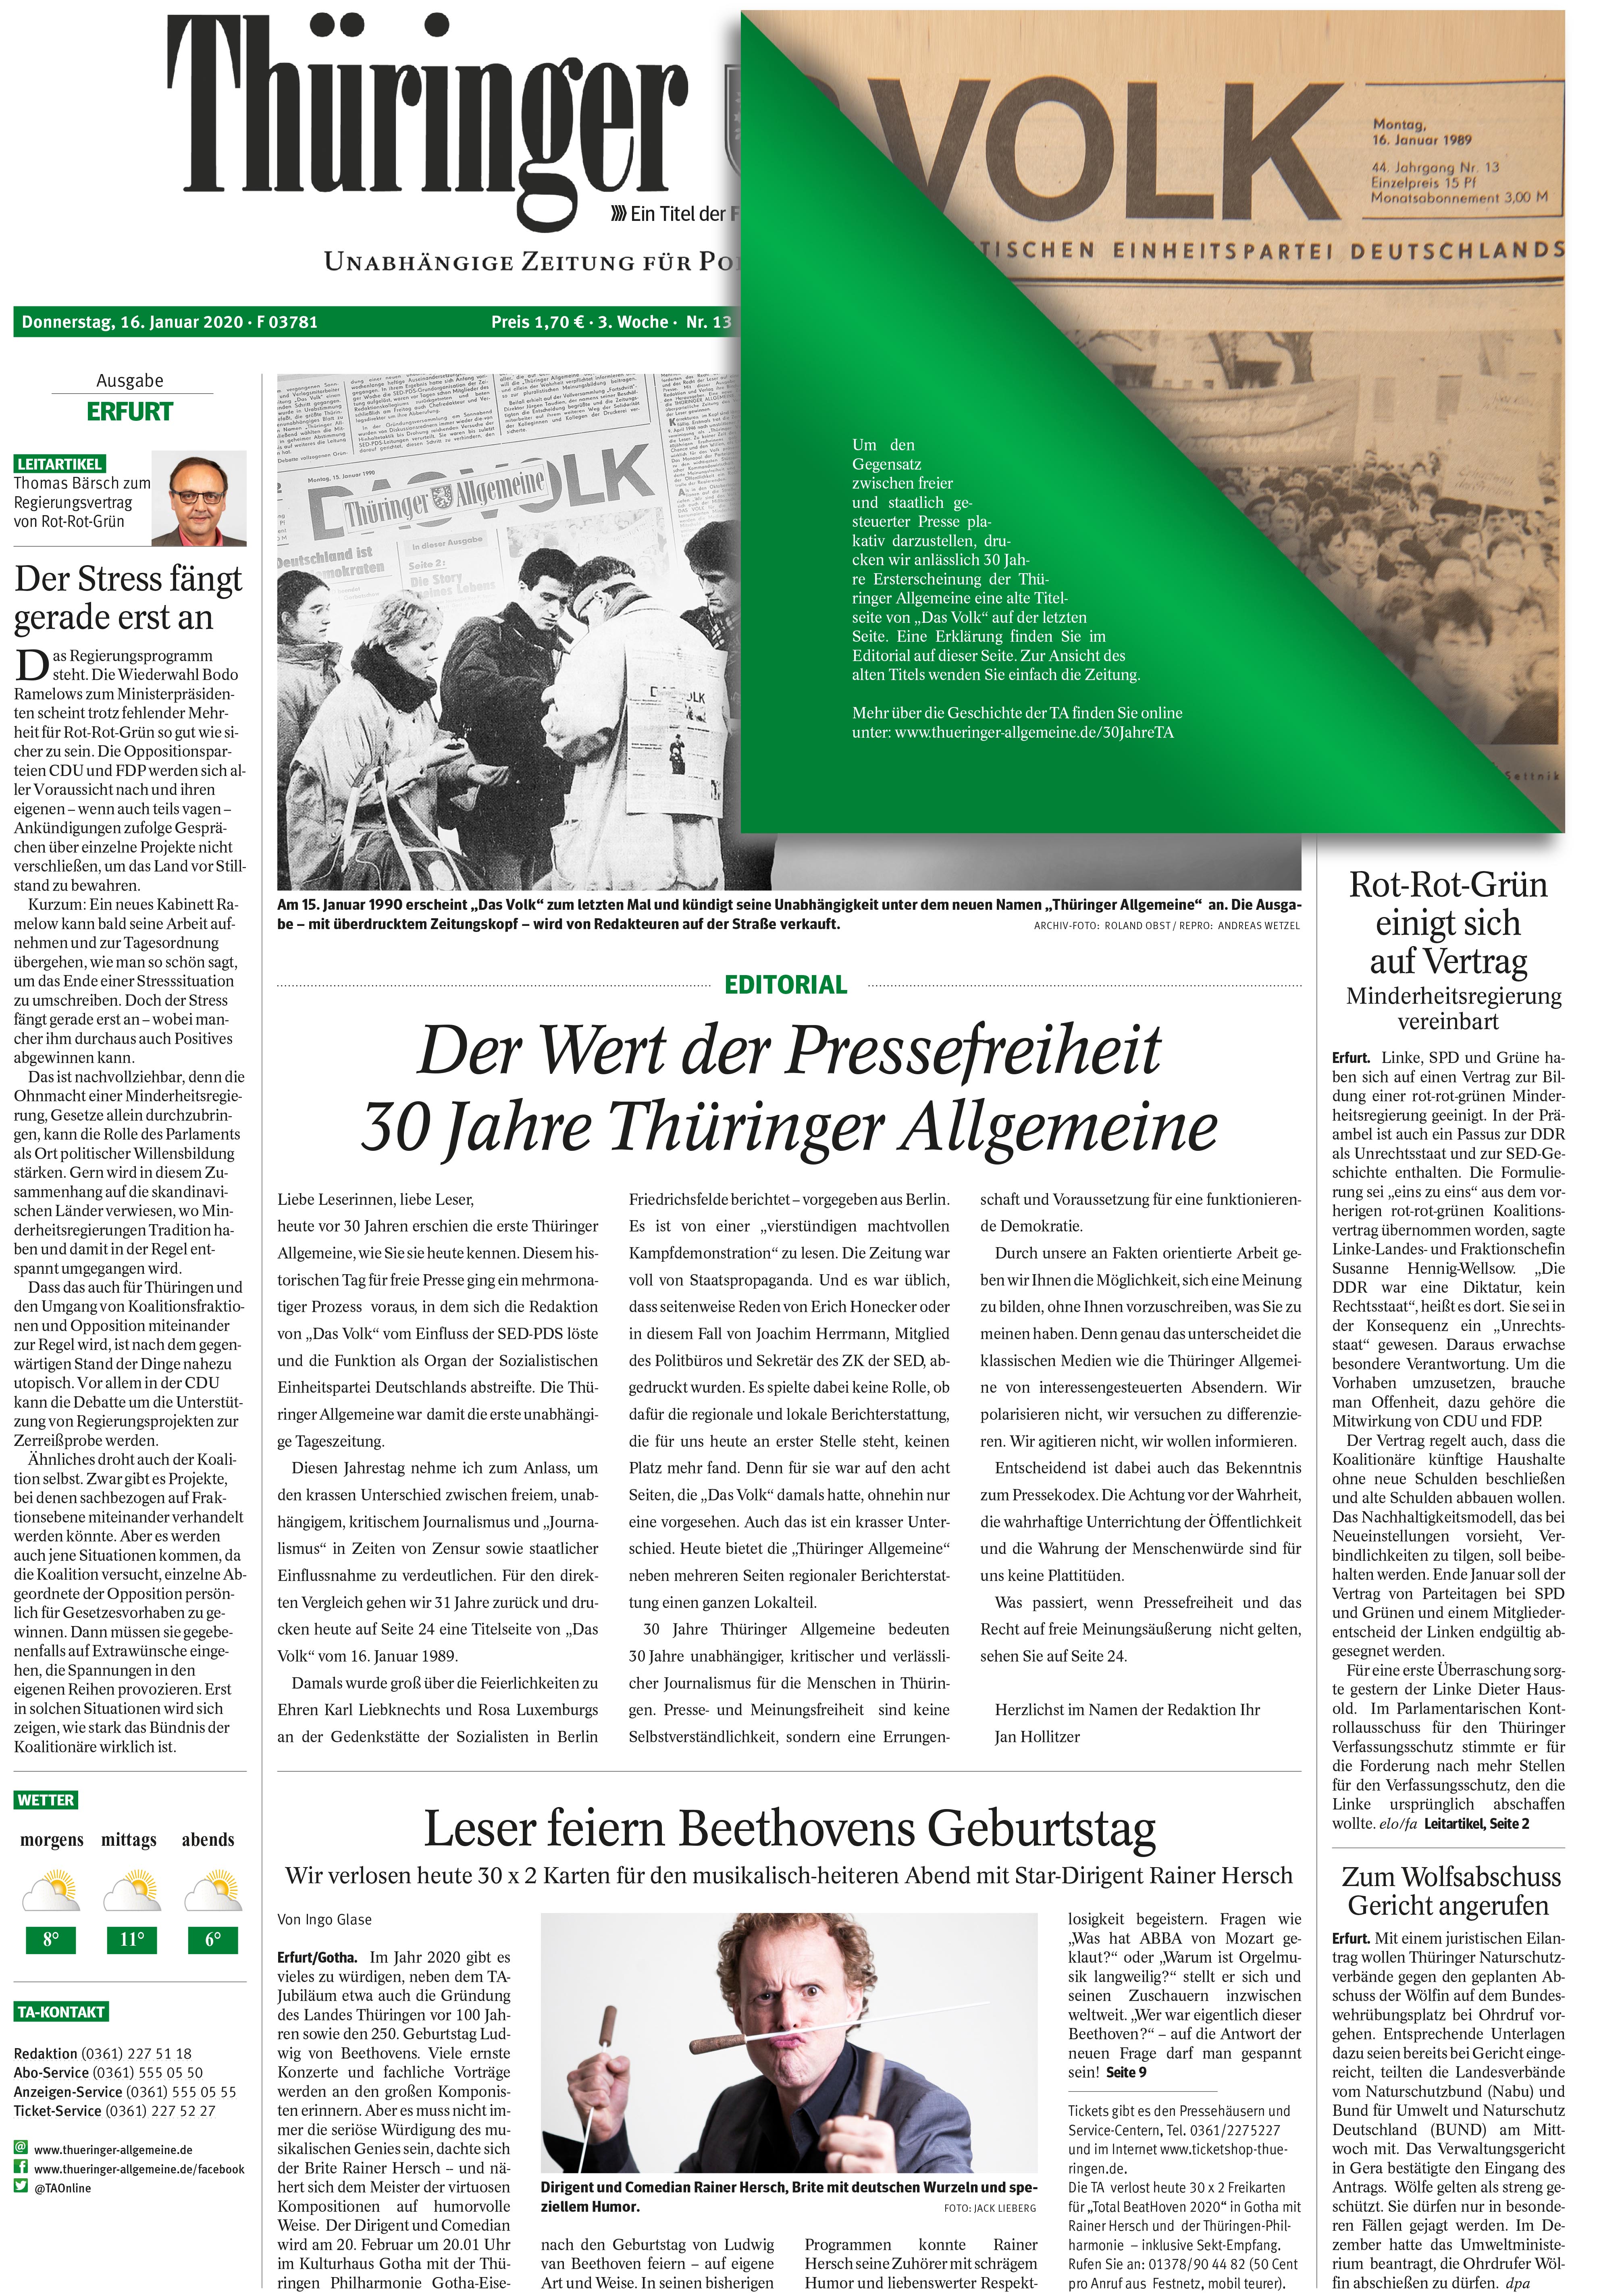 Thüringer Allgemeine feiert 30. Geburtstag